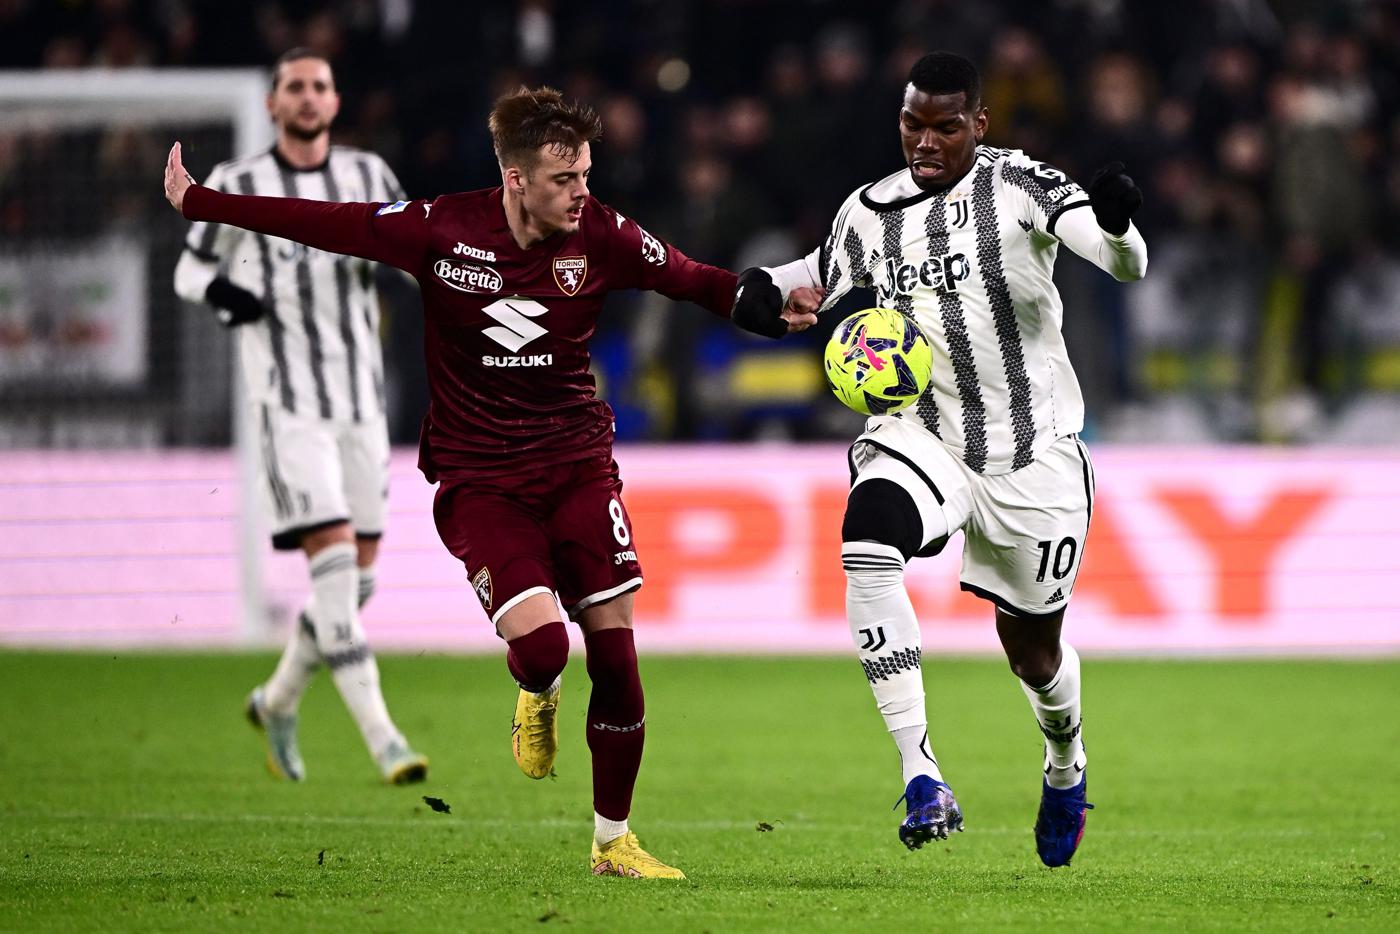 Juventus - Torino - 4-2. Mistrzostwo Włoch, runda 24. Recenzja meczu, statystyki.